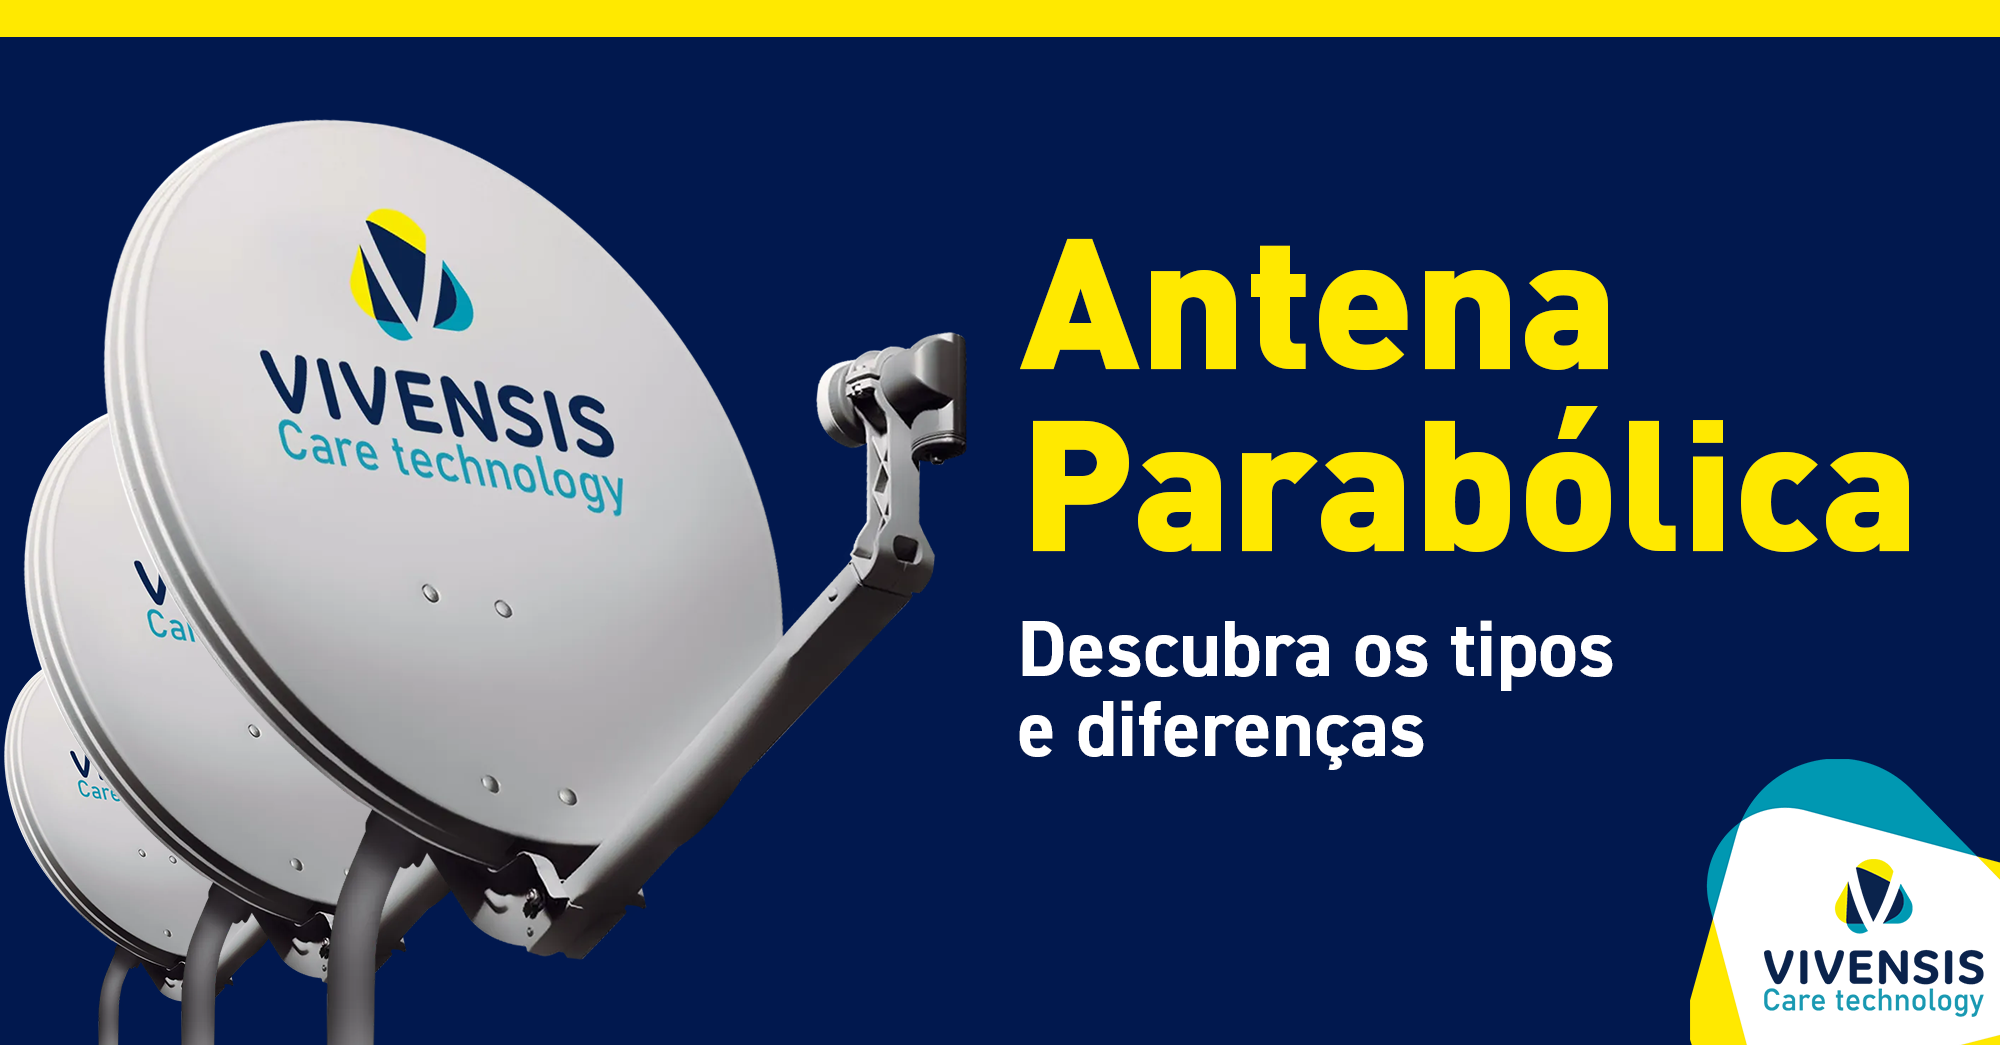 Antena Parabólica: descubra os tipos e diferenças